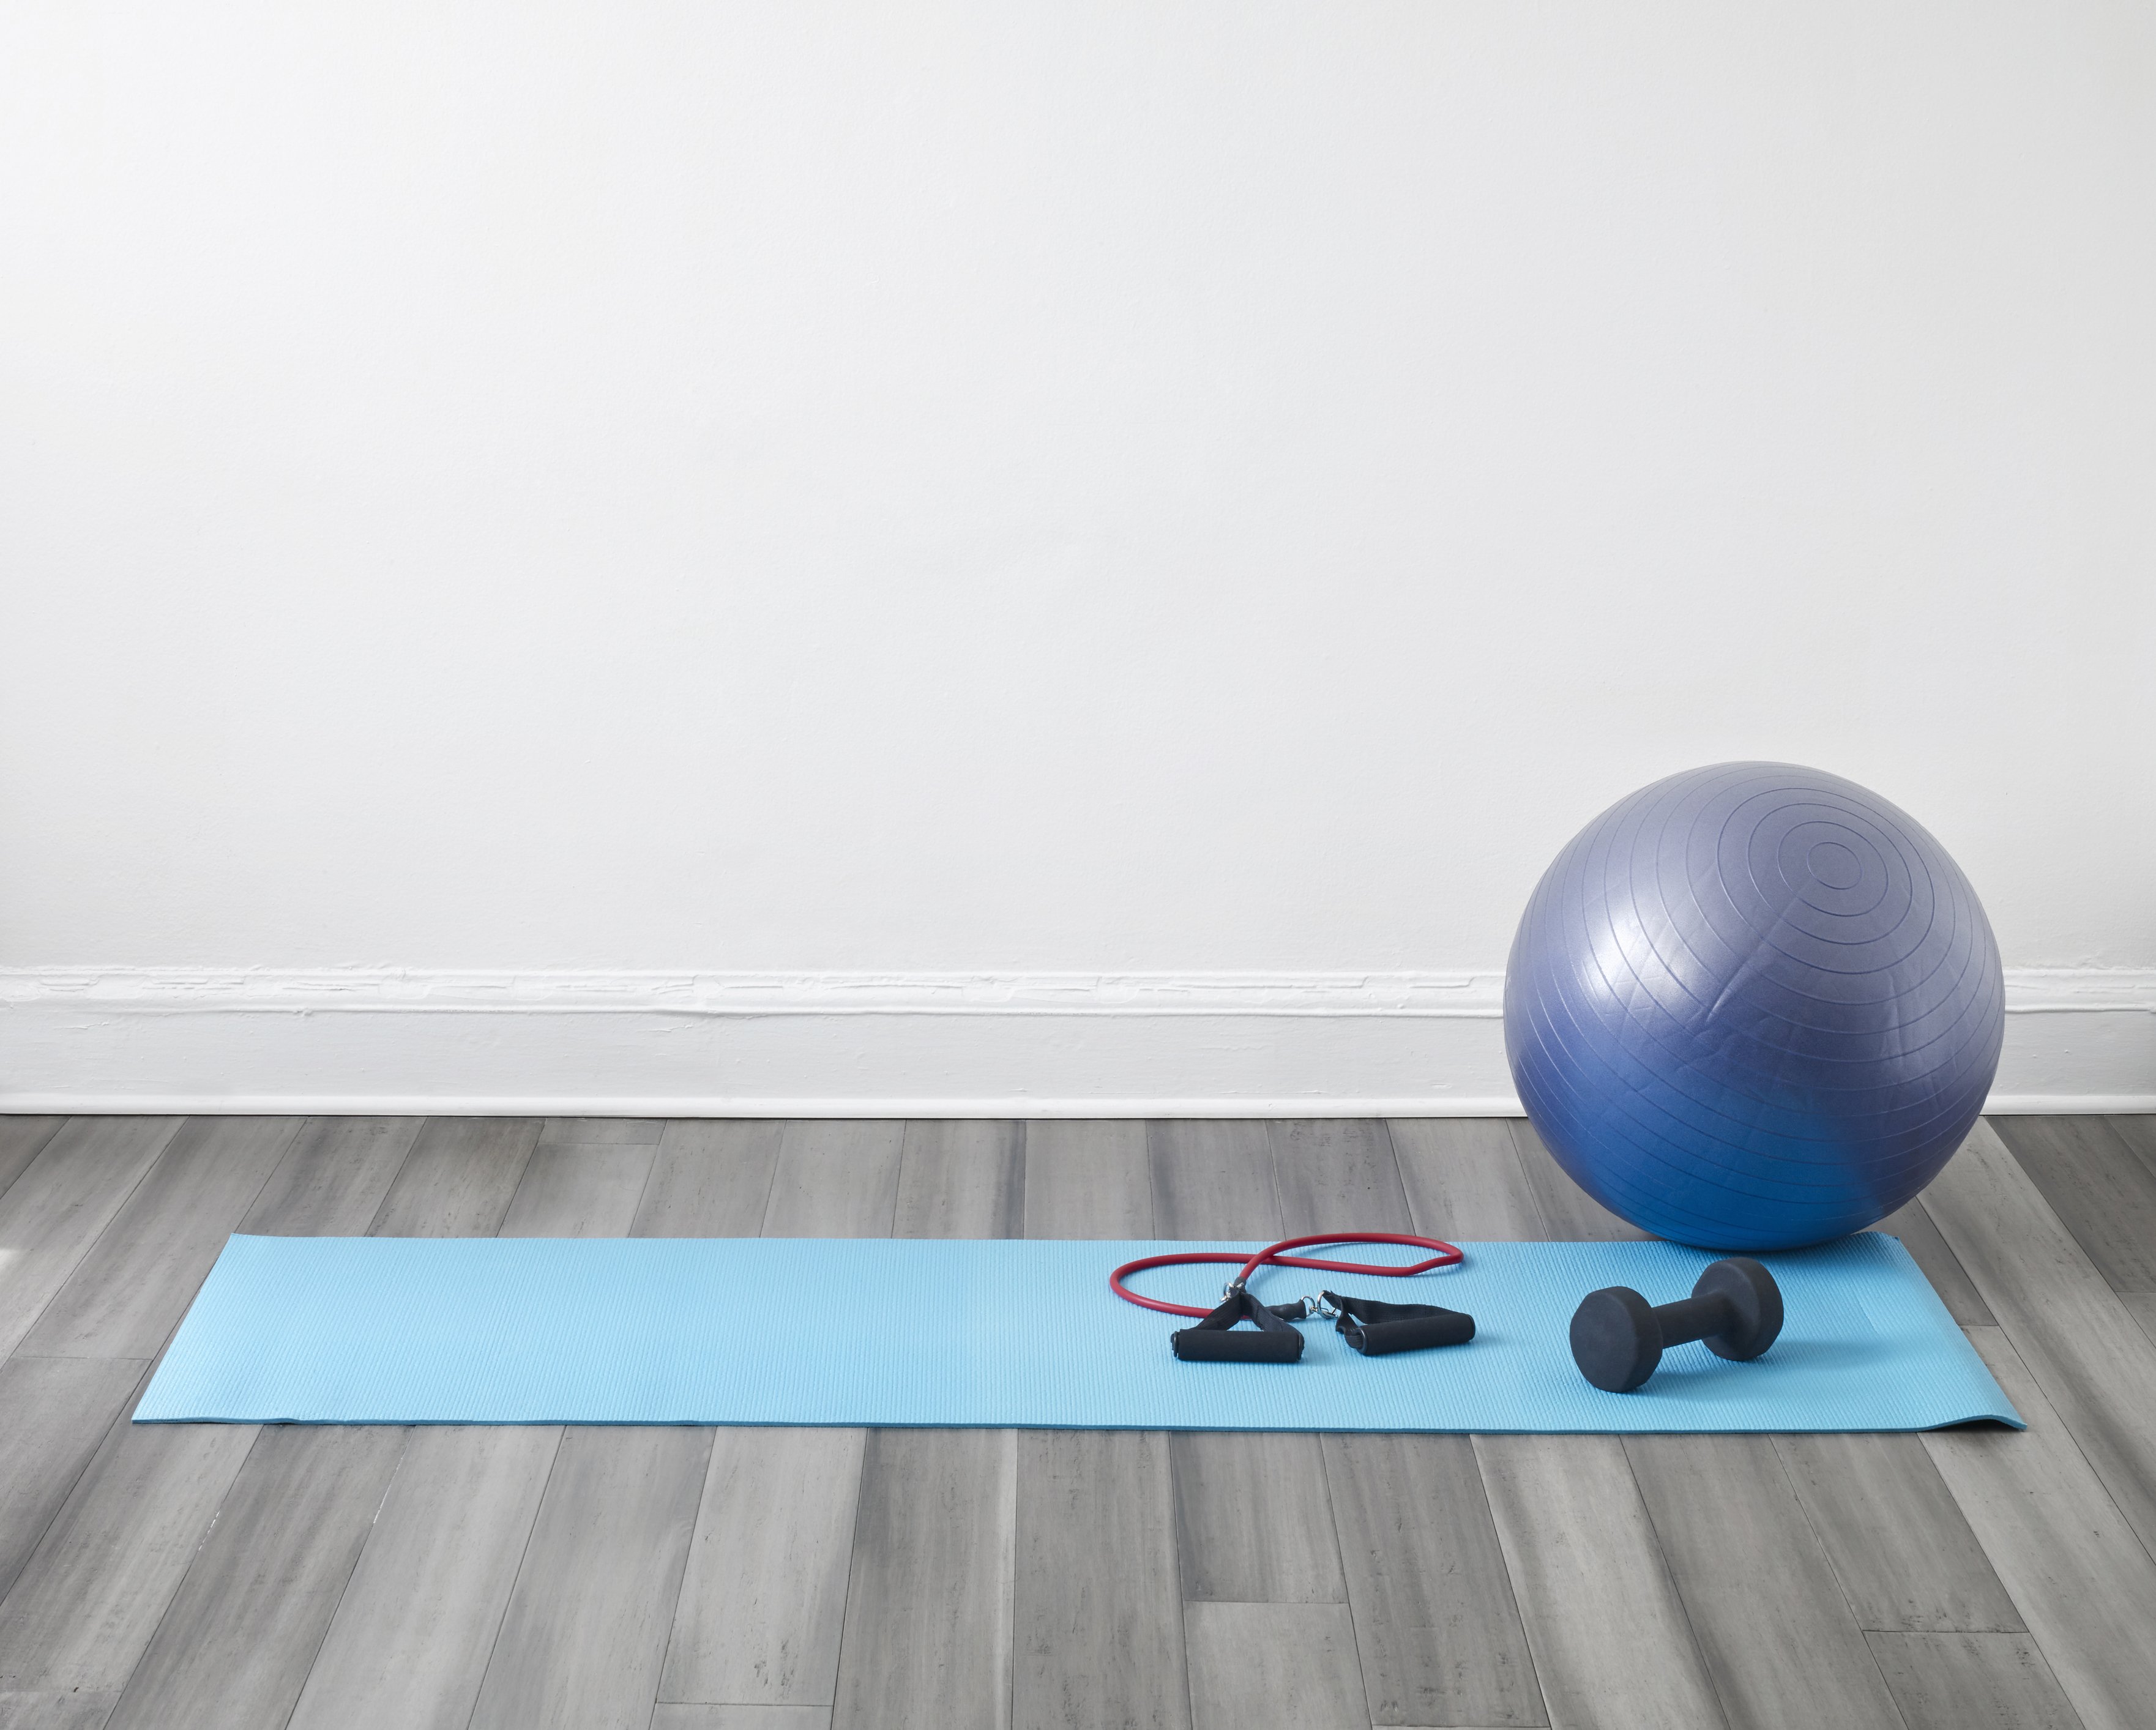 Ασκήσεις με μπάλα: Η Έρη Καμπανοπούλου σας δείχνει 3 εύκολους τρόπους για να δυναμώσετε το σώμα σας 